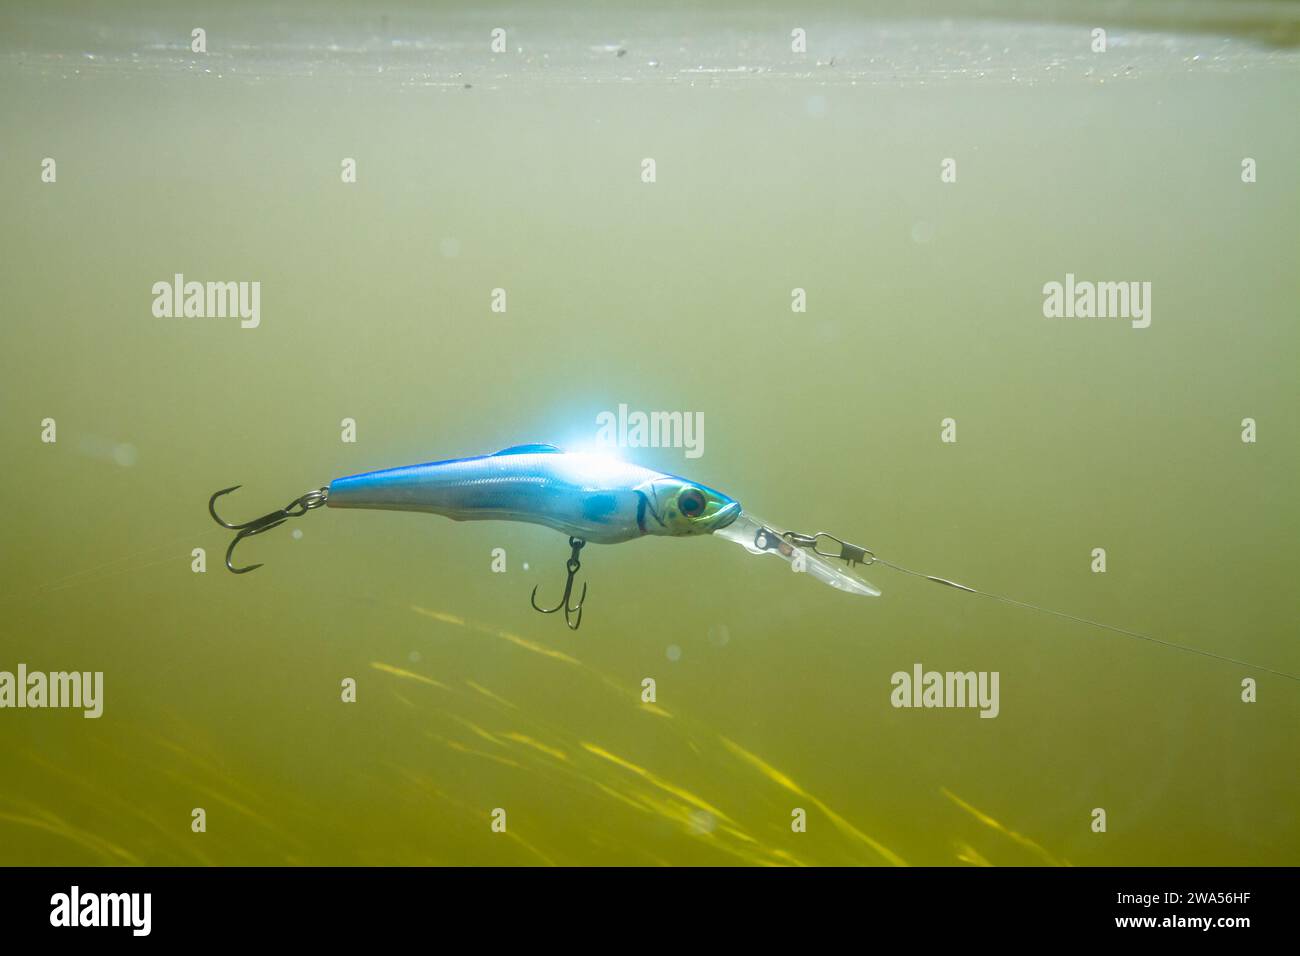 Un wobbler bleu attaché à une ligne de pêche flotte dans la colonne d'eau verdâtre dans la rivière pendant la pêche à la filature. Sous elle, les plantes aquatiques de co vert Banque D'Images